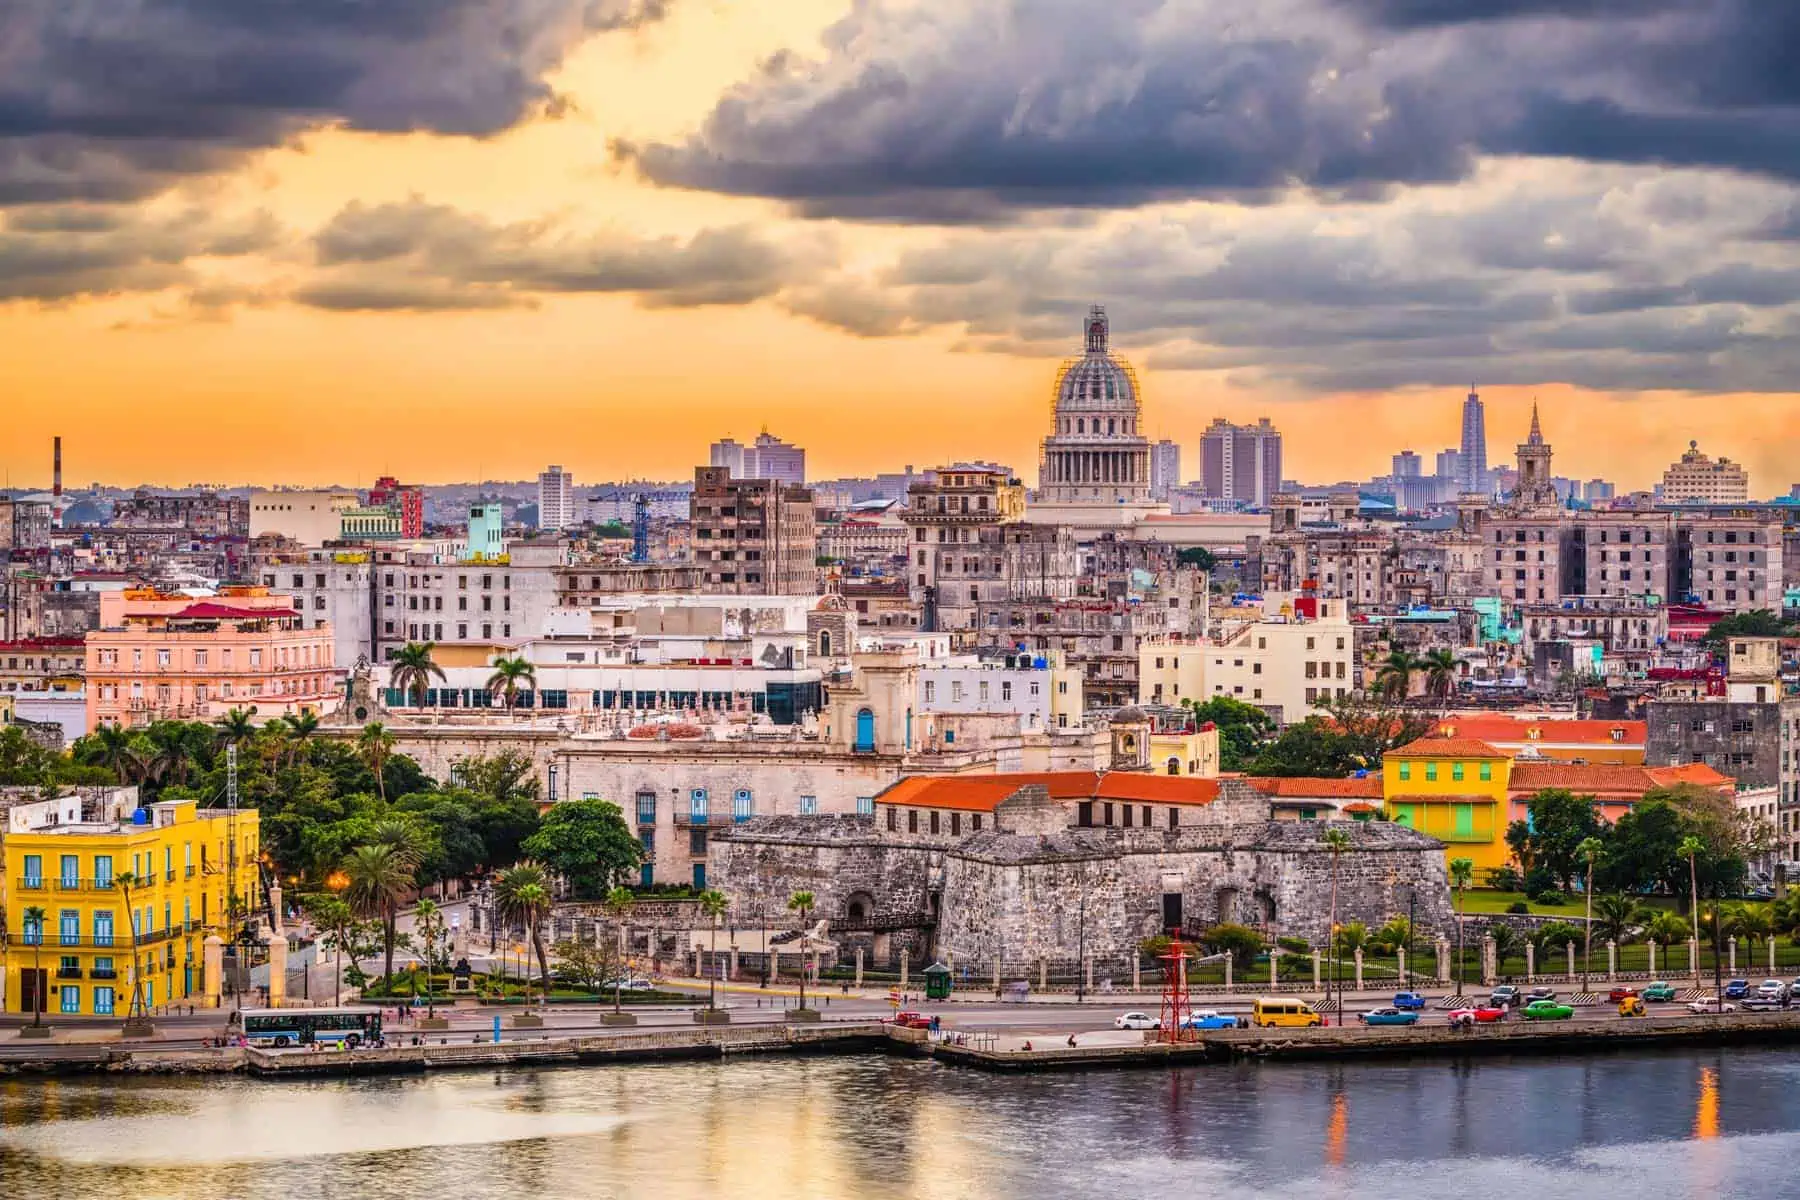 ¡CUBA: La Habana + Varadero! Hoteles 4* con Desayuno y TODO INCLUIDO. ¡Incluye Vuelos + Traslados + Seguro de viaje + Excursiones opcionales!